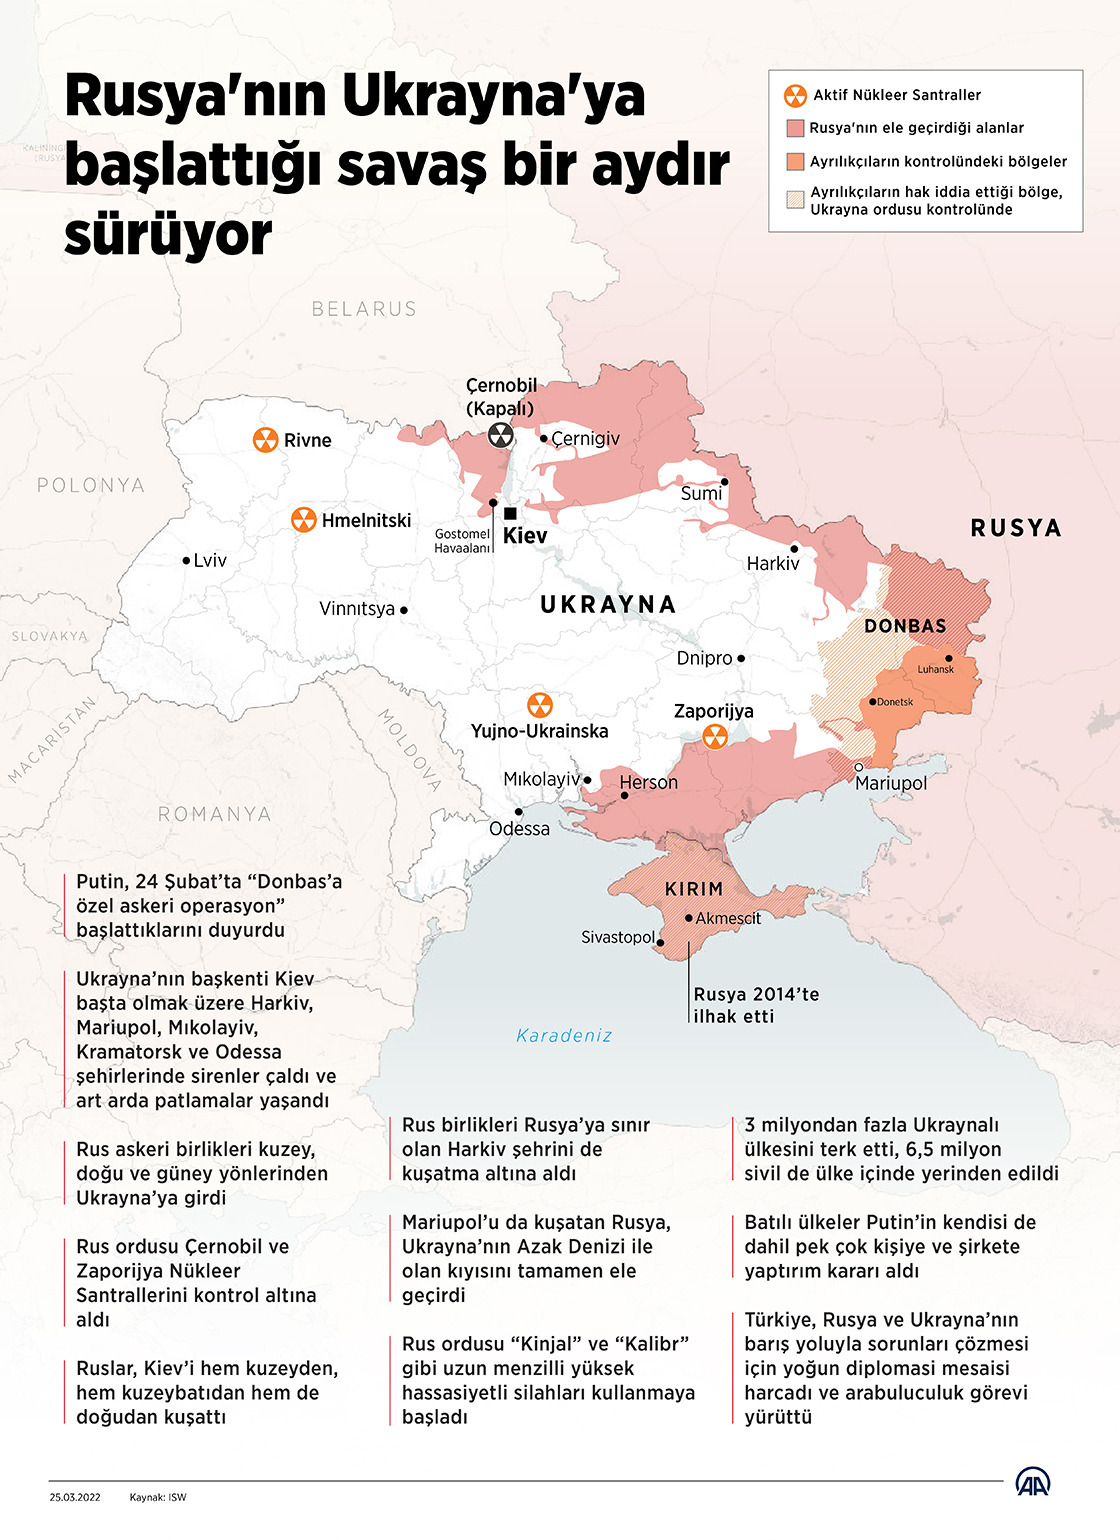 Rusya'nın Ukrayna'ya başlattığı savaş bir aydır sürüyor